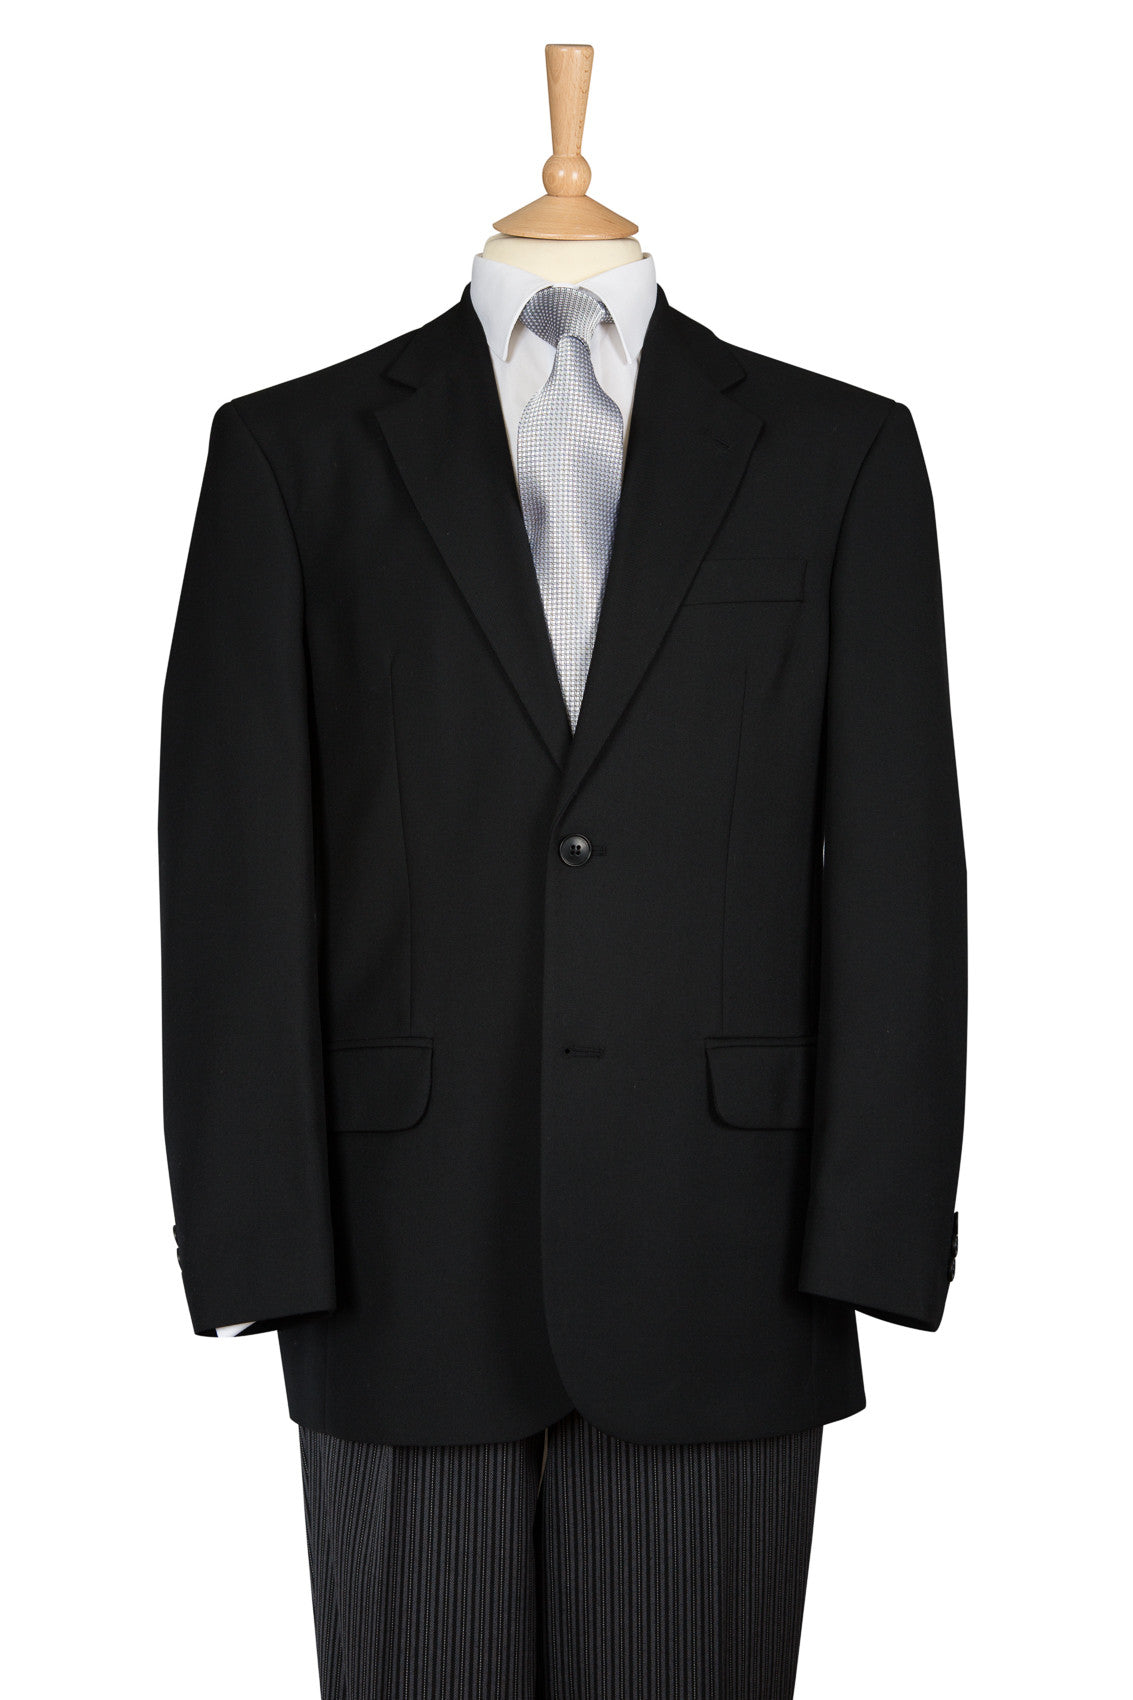 simple black two piece suit for men 